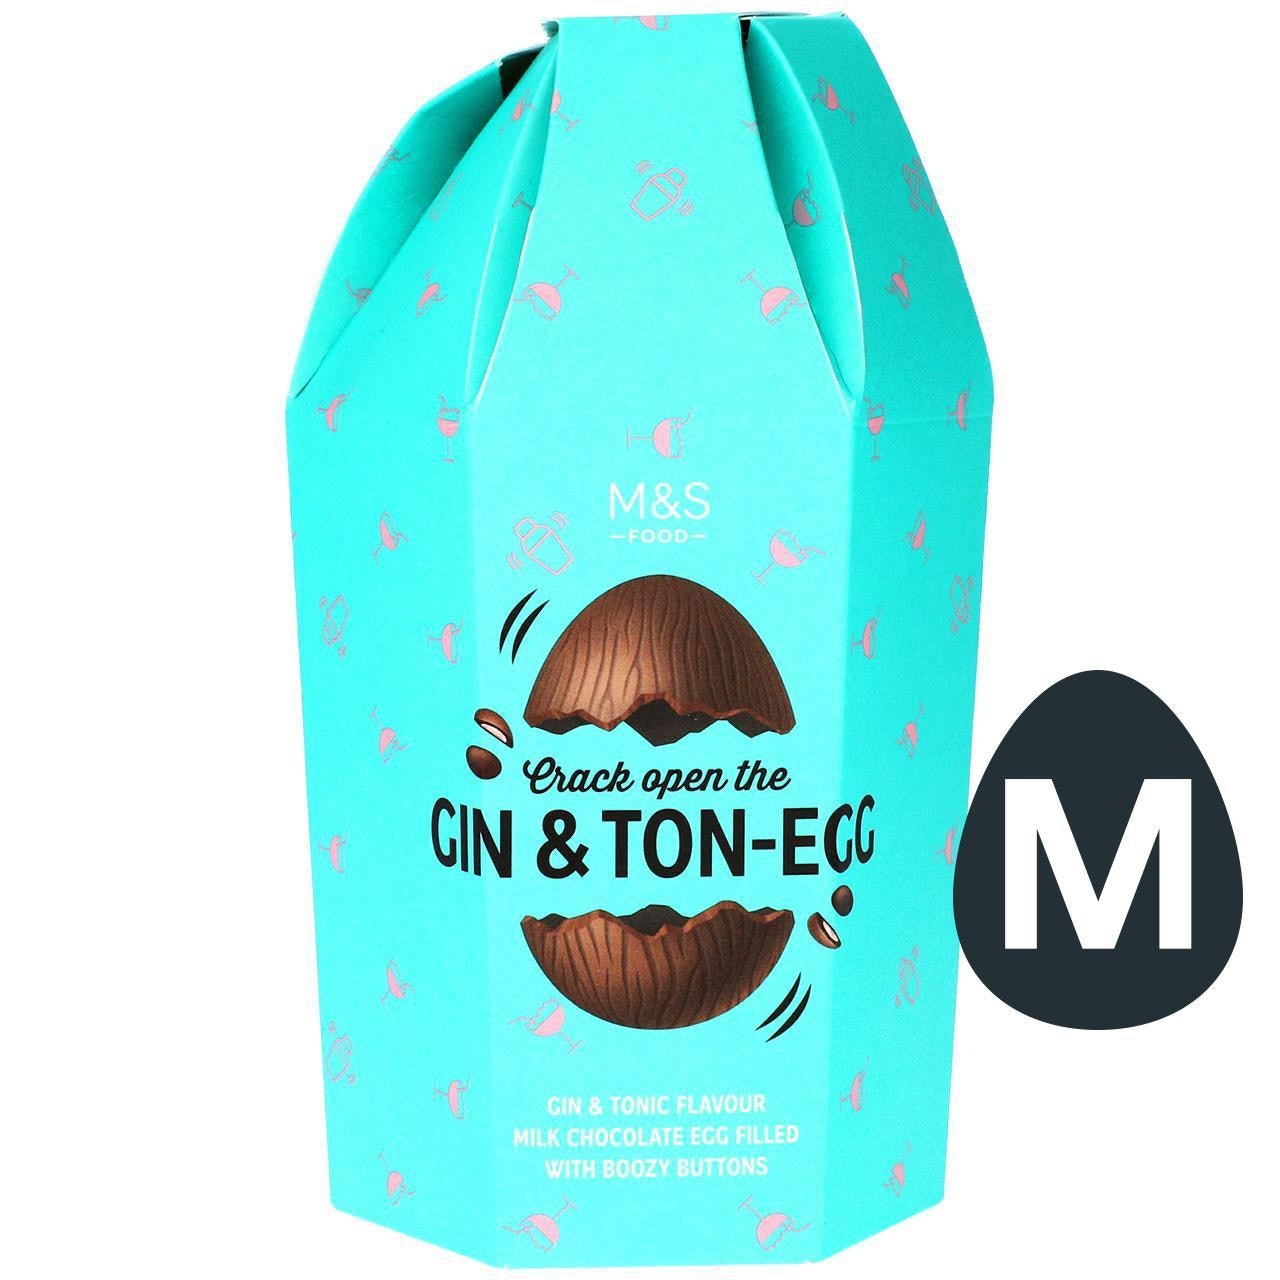 M&S je predstavil velikonočno jajce z ginom in tonikom